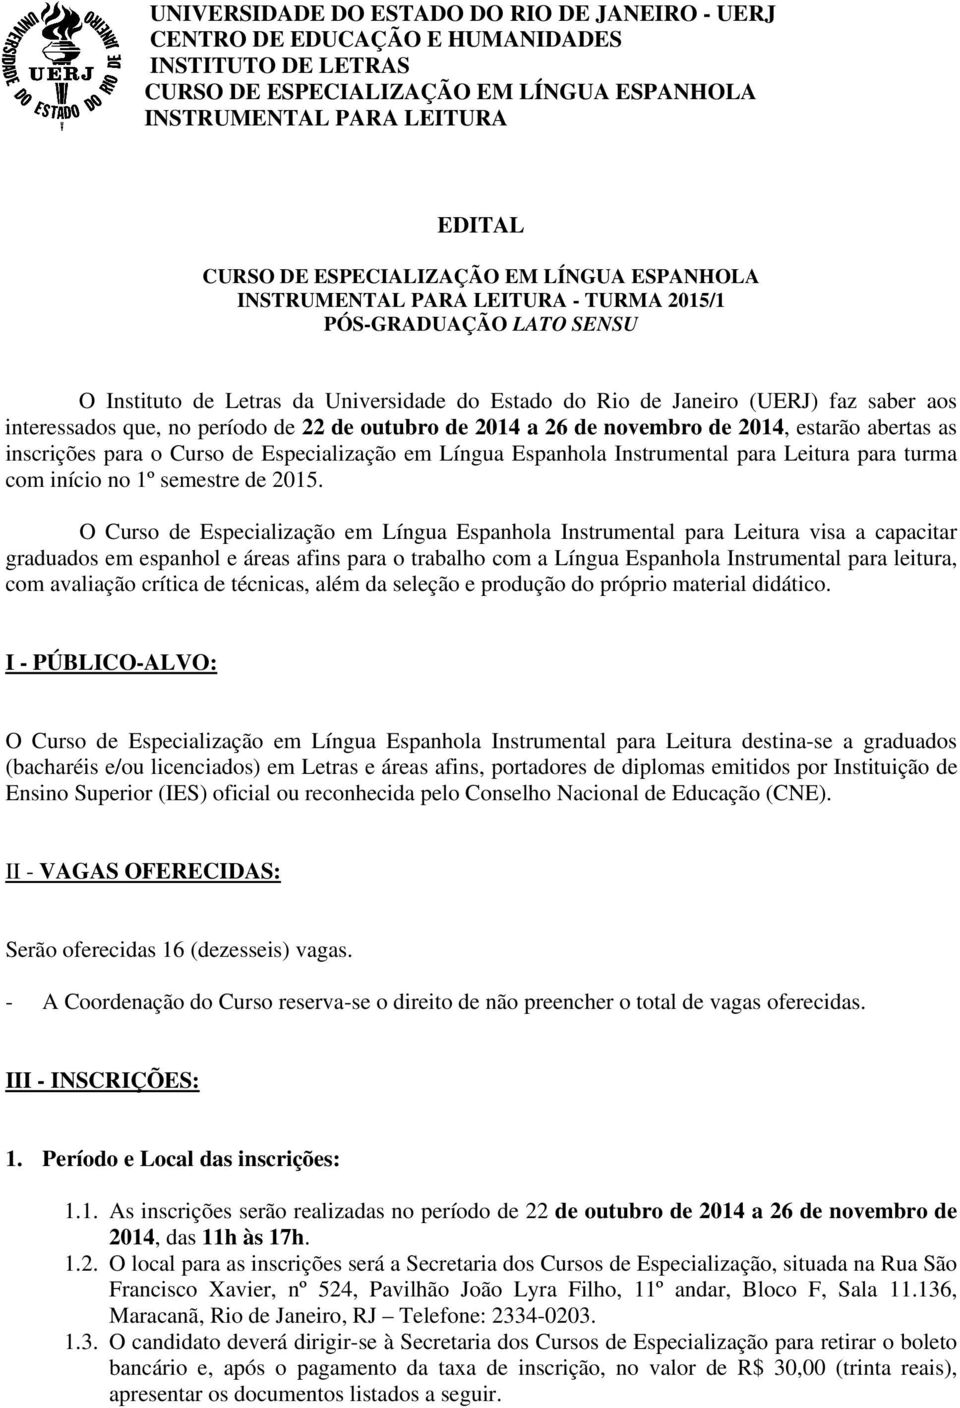 interessados que, no período de 22 de outubro de 2014 a 26 de novembro de 2014, estarão abertas as inscrições para o Curso de Especialização em Língua Espanhola Instrumental para Leitura para turma